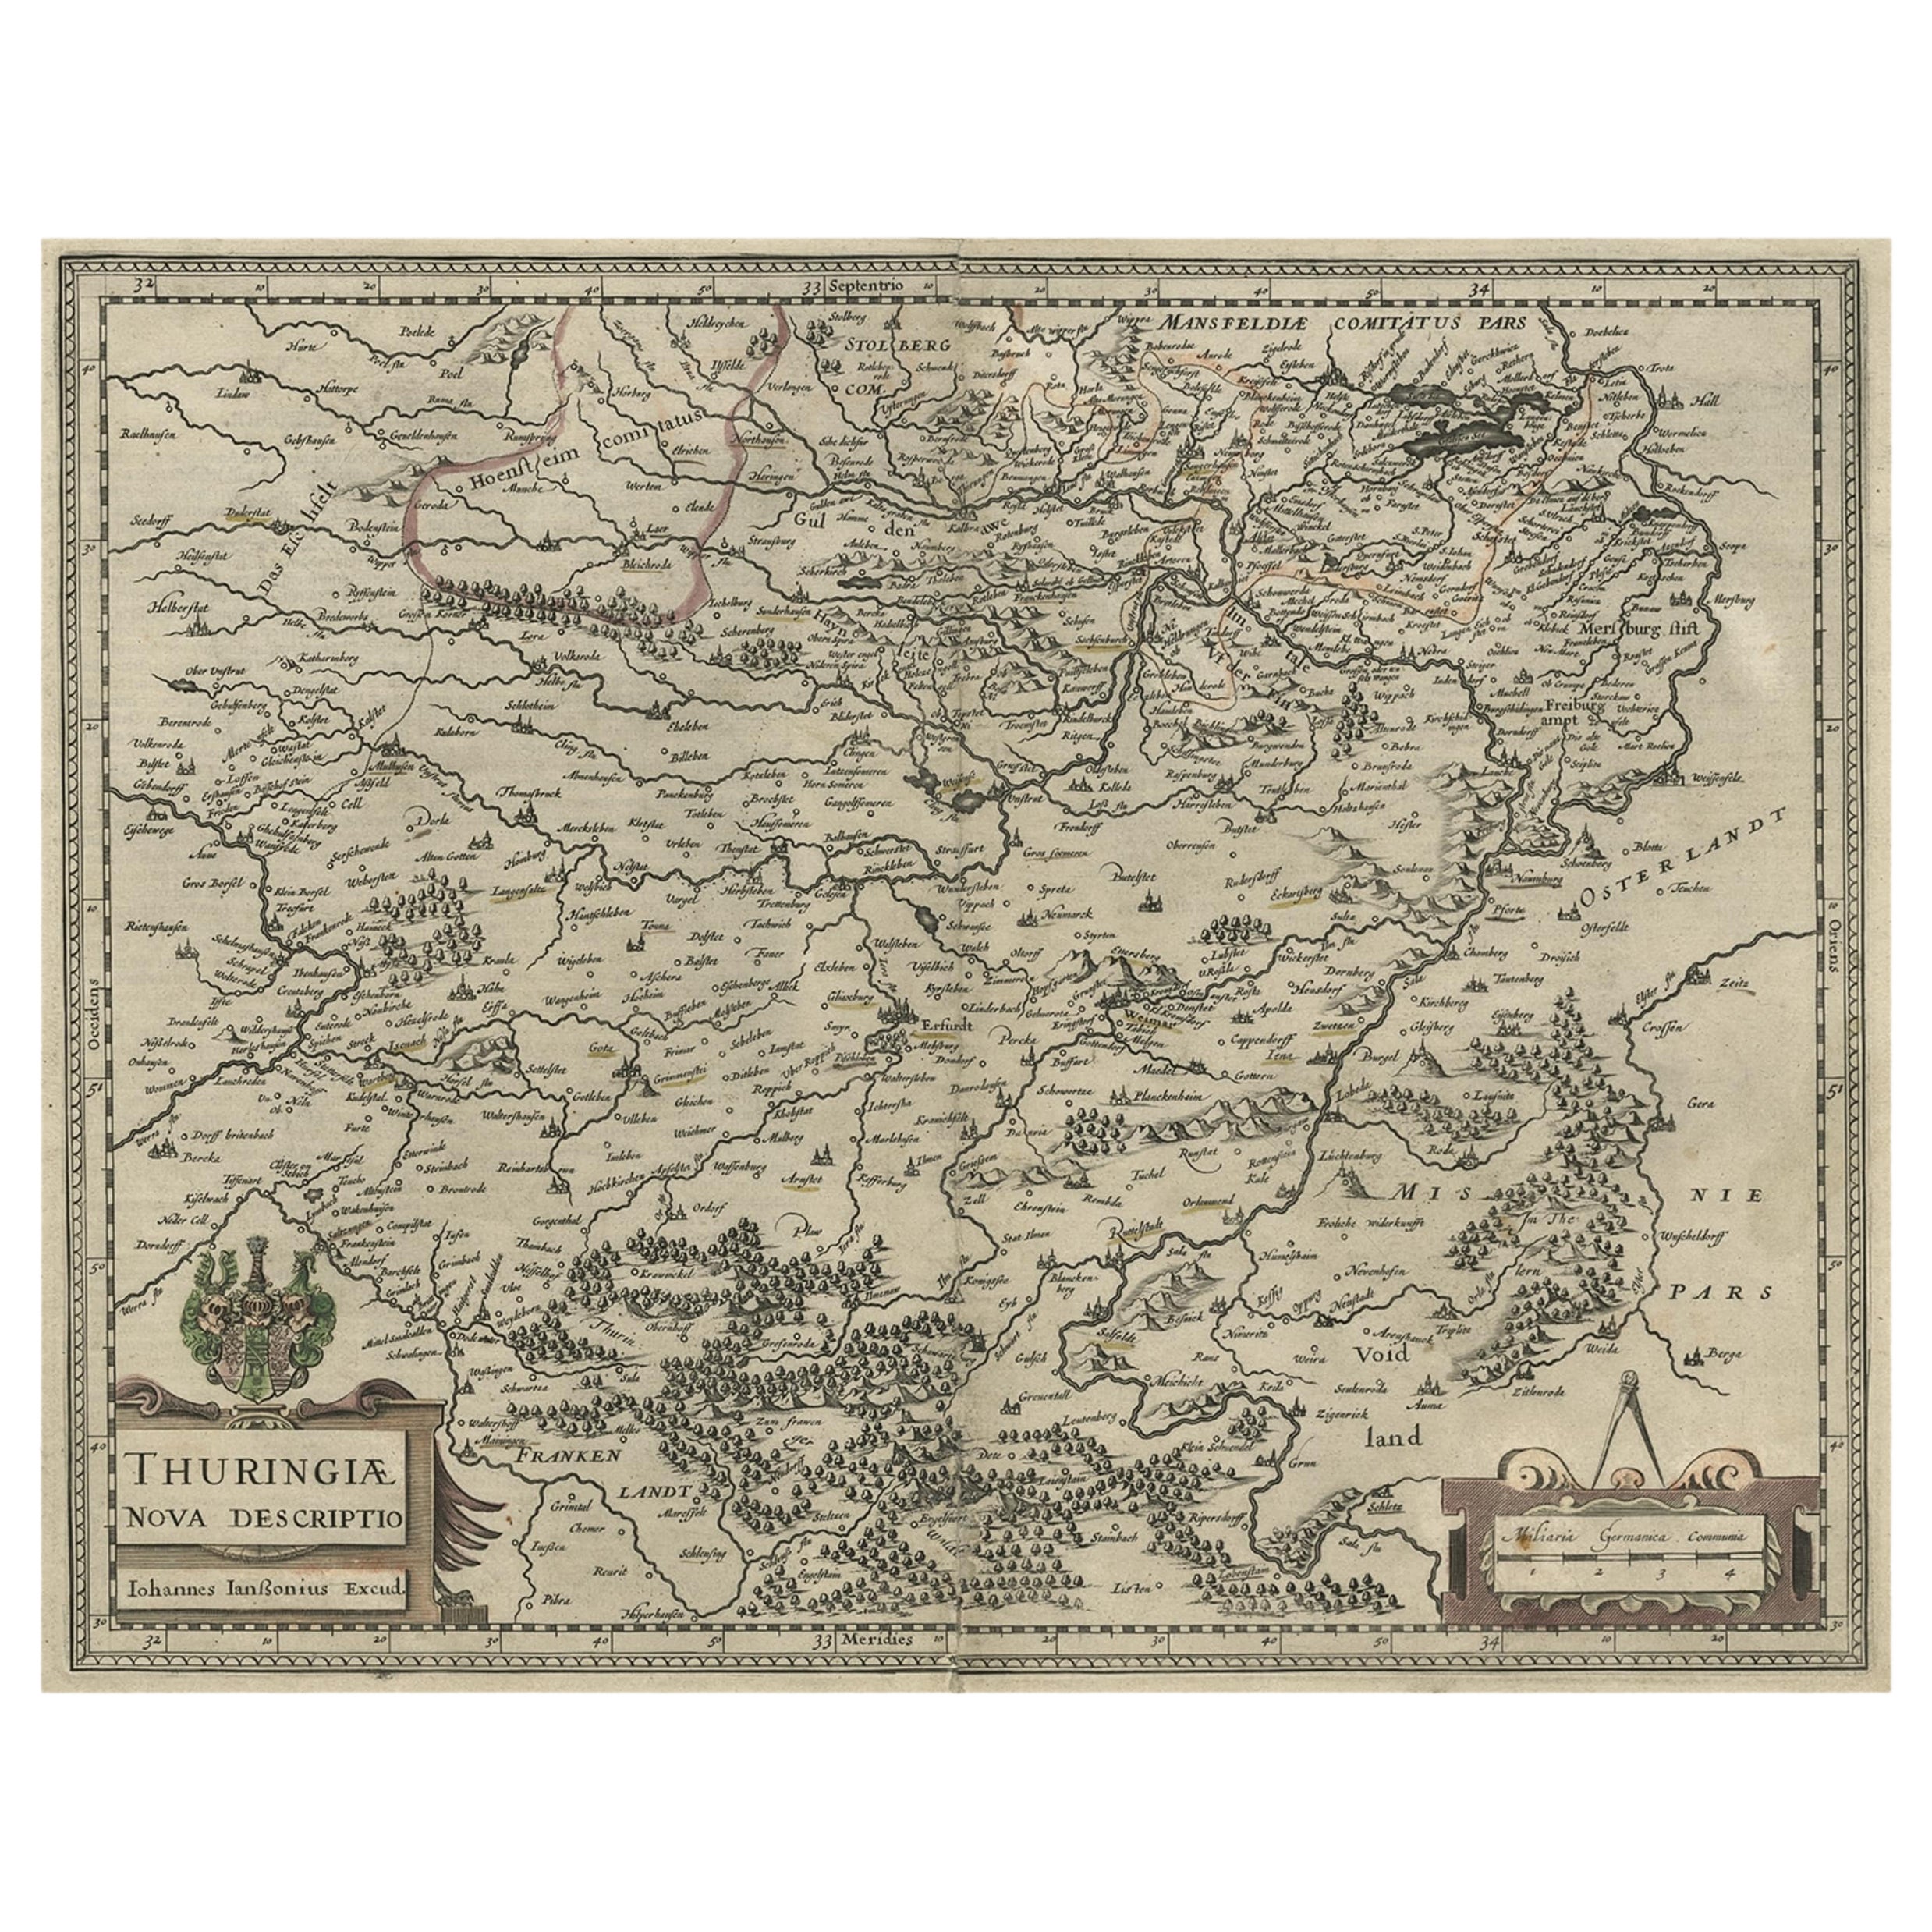 Originale antike Originalkarte von Thuringia, Deutschland von J. Janssonius, ca. 1650